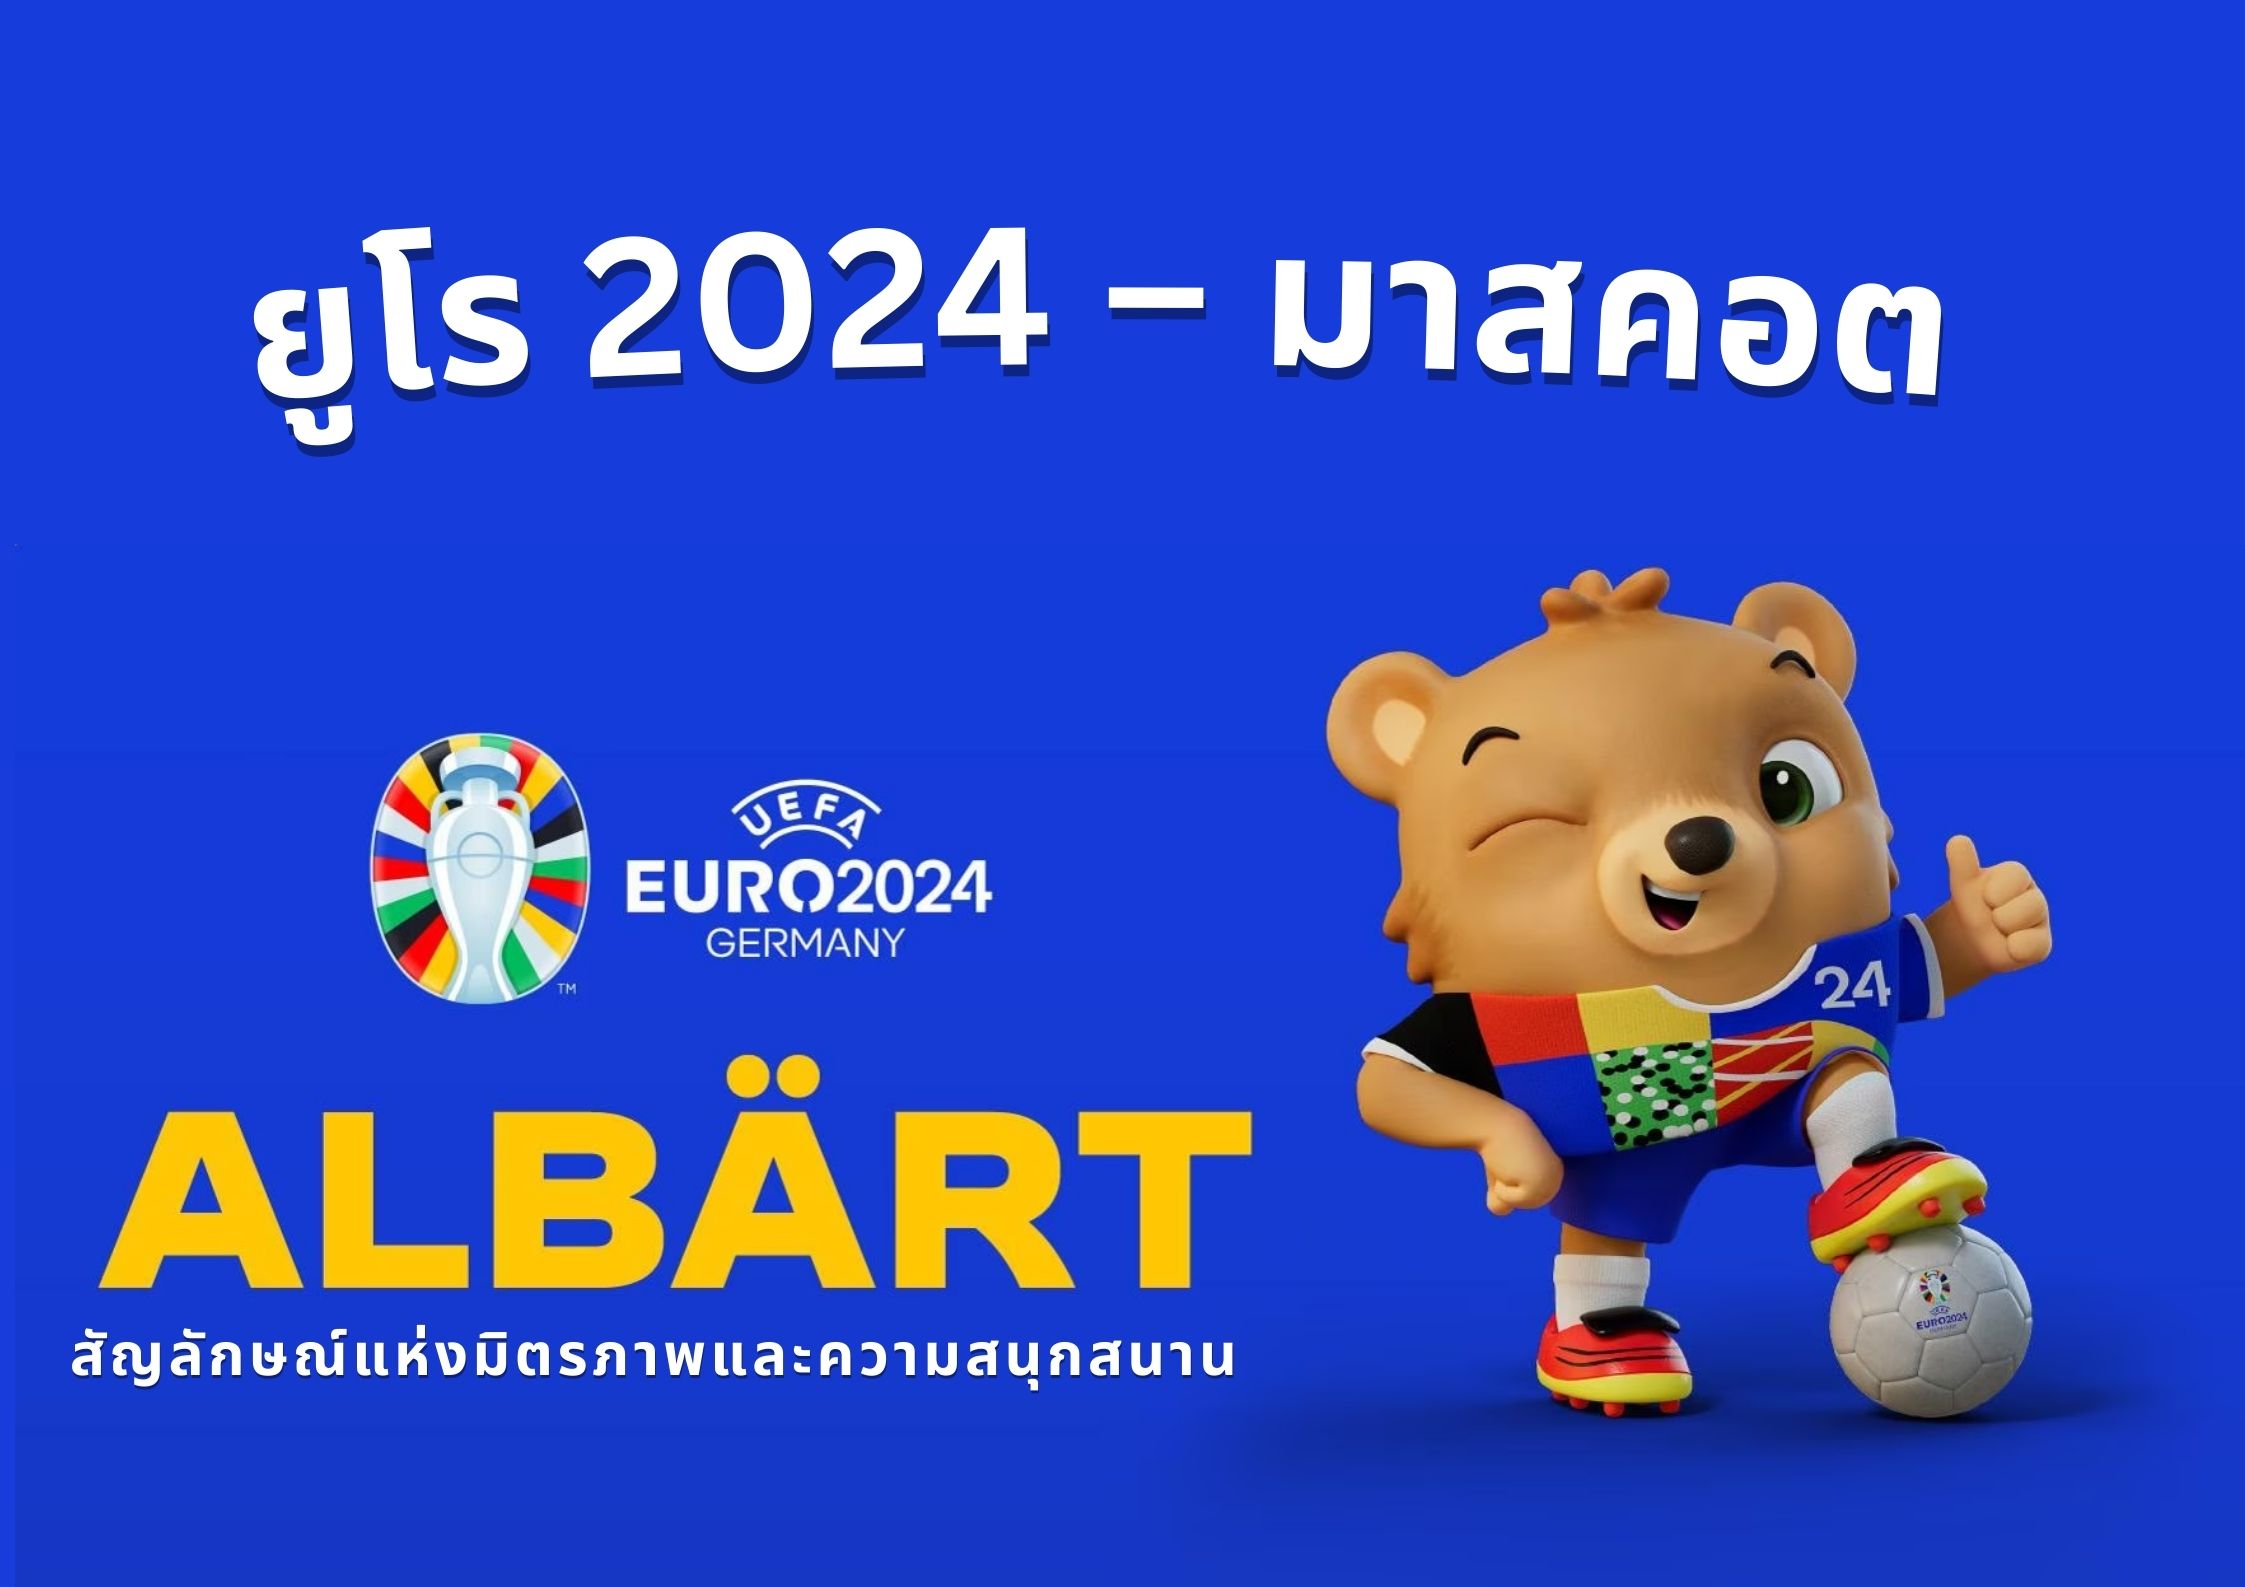 ยูโร 2024 – มาสคอต หมีเท็ดดี้สุดน่ารัก สัญลักษณ์แห่งมิตรภาพและความสนุกสนาน